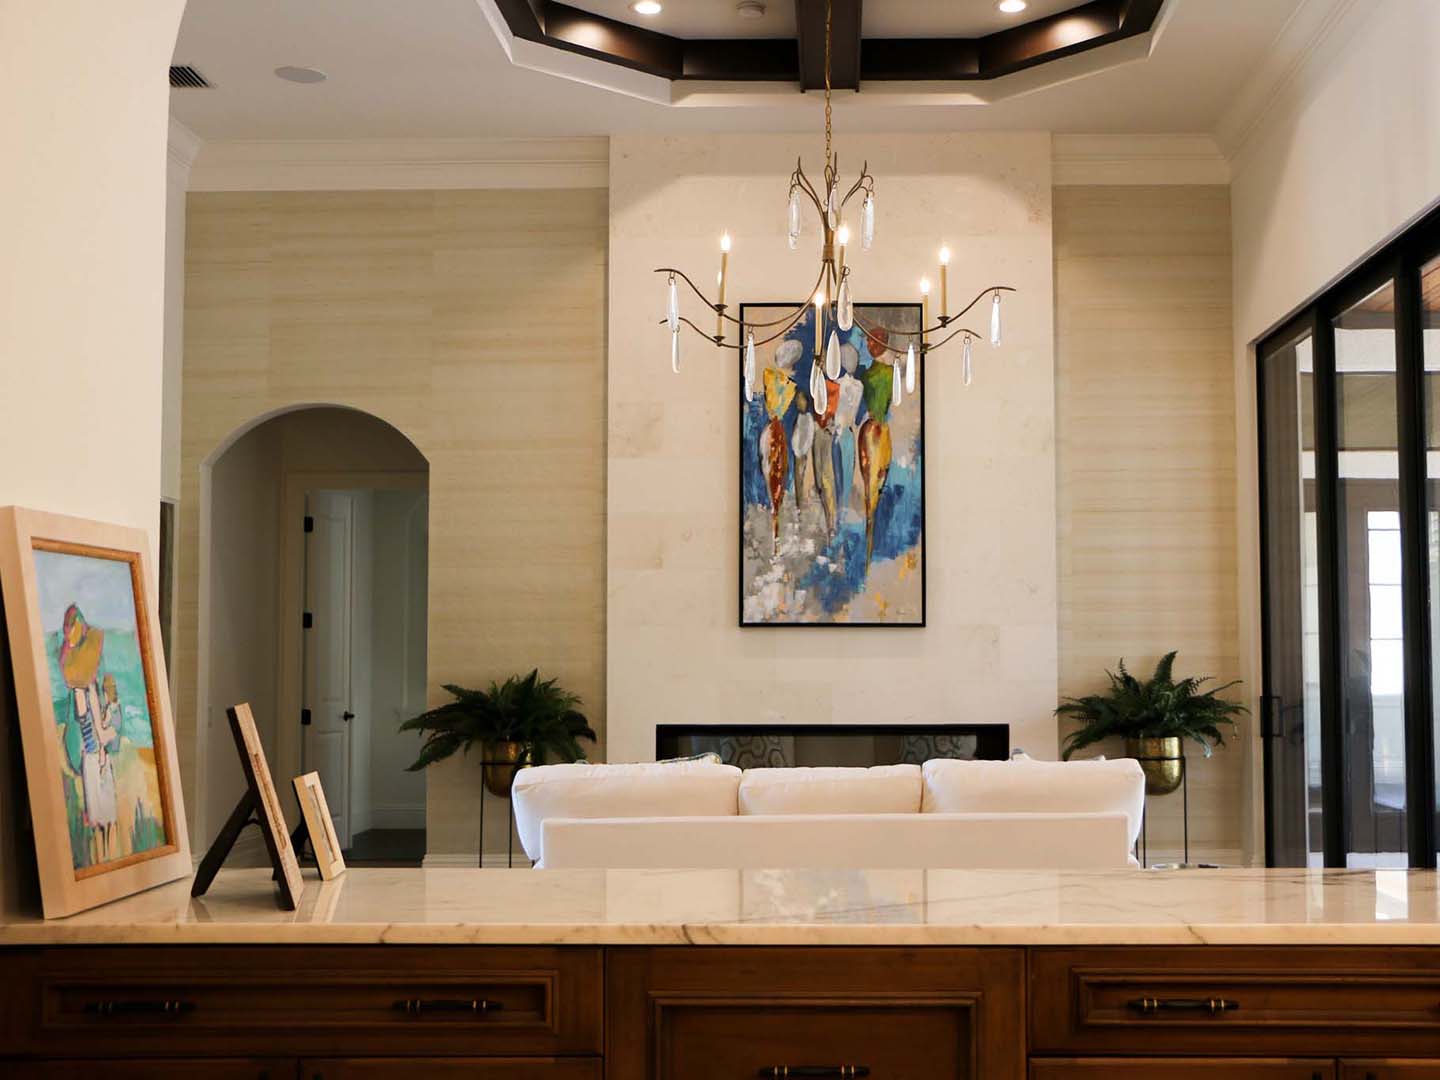 Decorative Suite in the Sarasota Florida area